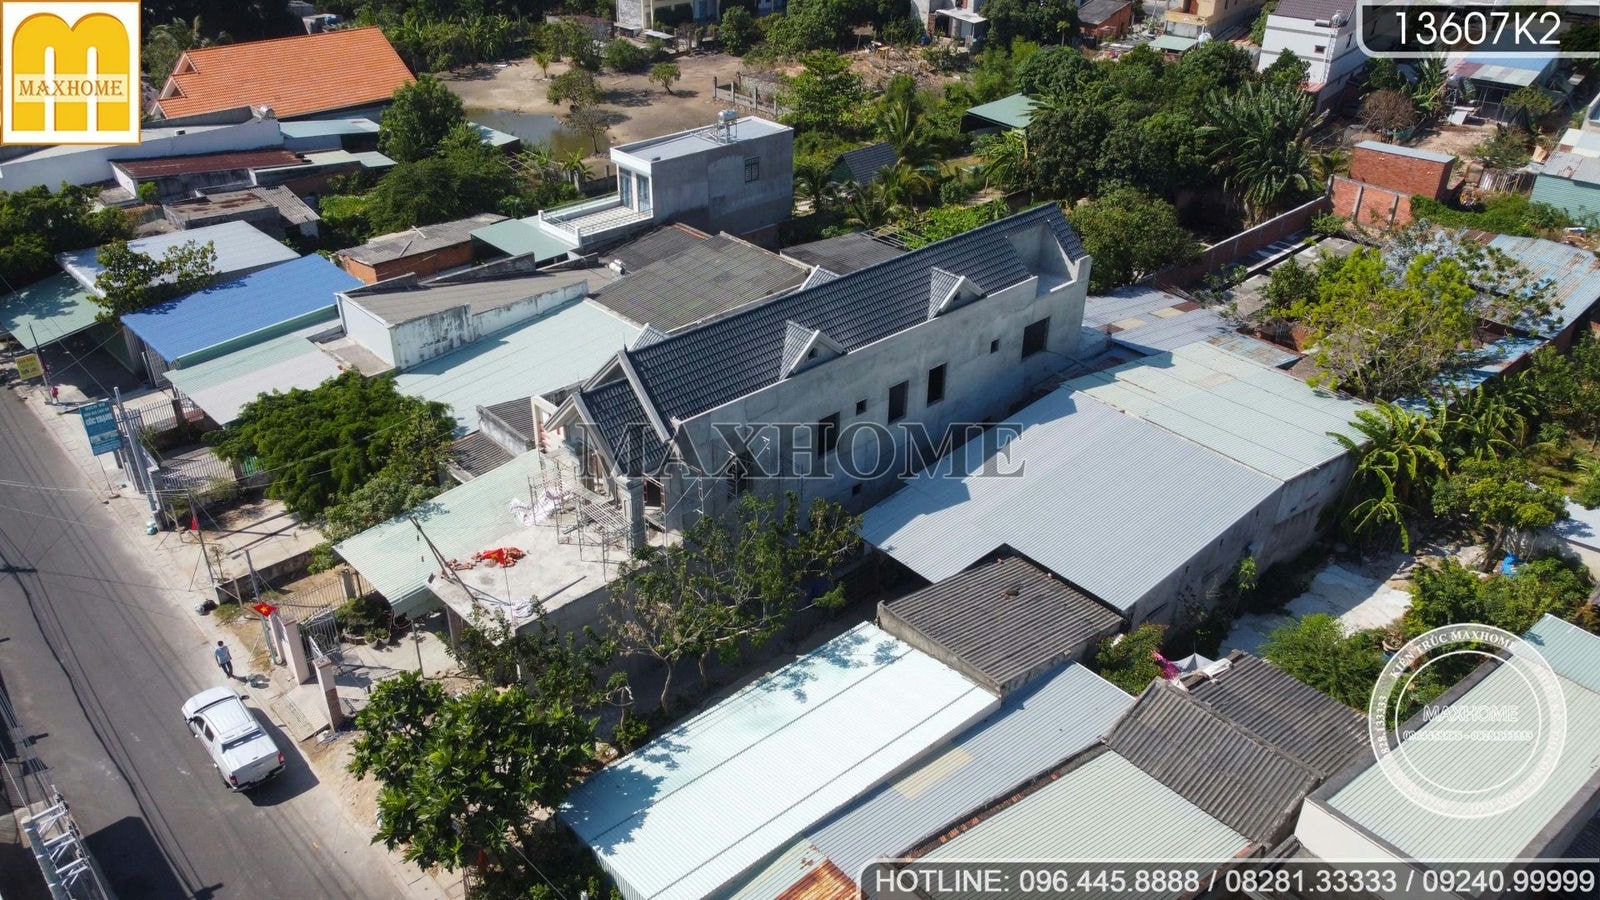 Ghé thăm tiến độ công trình nhà phố mái Thái tại Vũng Tàu I MH01600